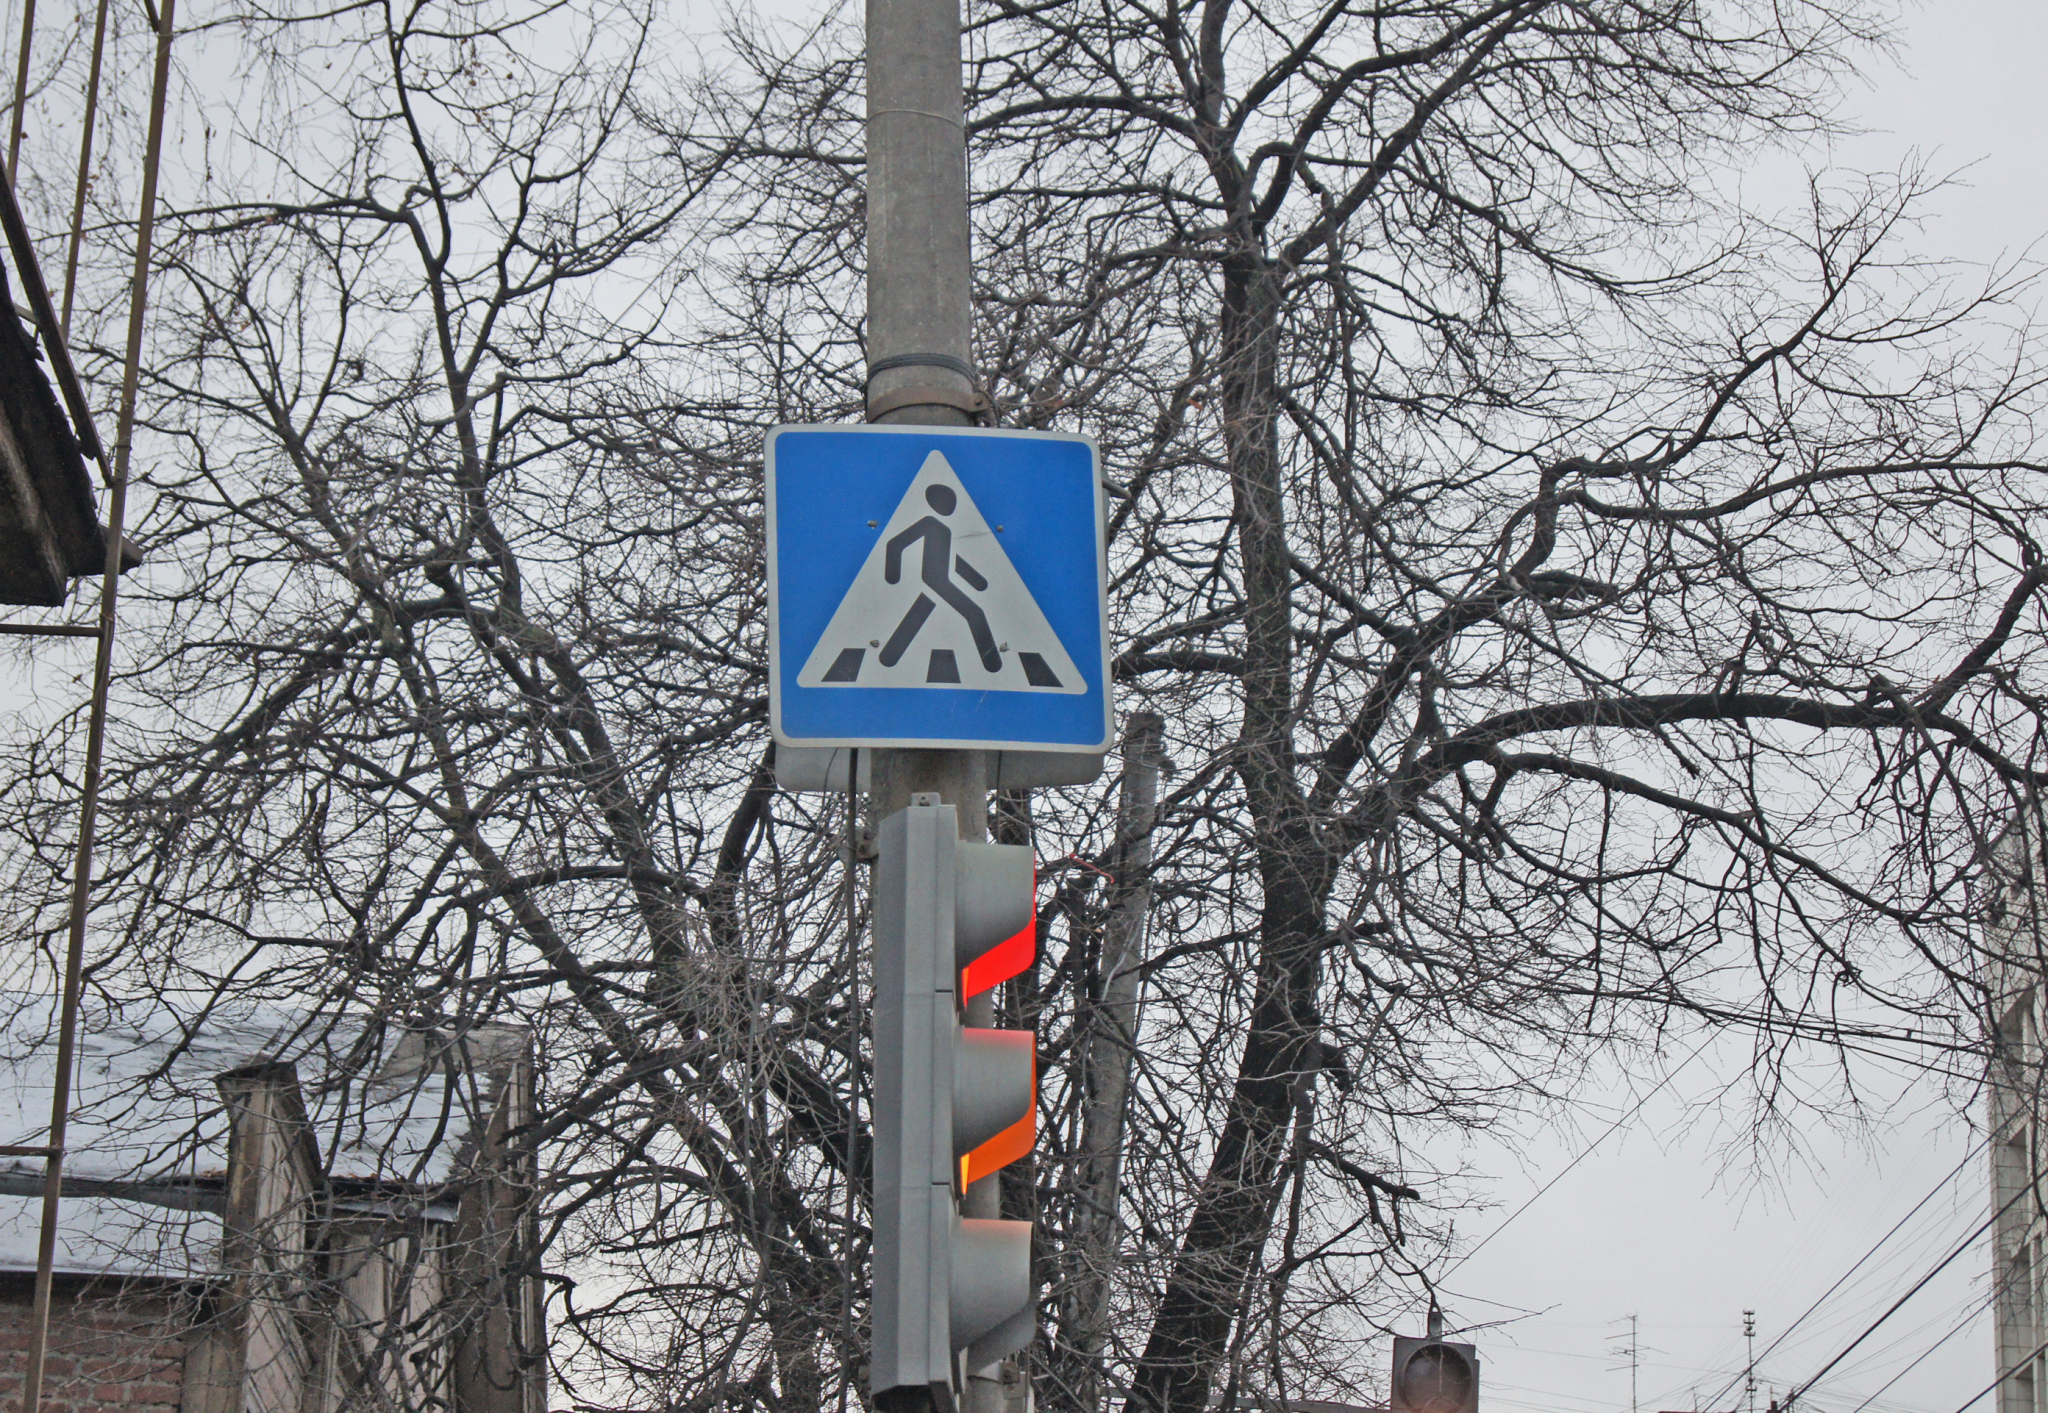 "Пусть вернут все как было" - рязанцы недовольны новым светофором на Касимовском шоссе